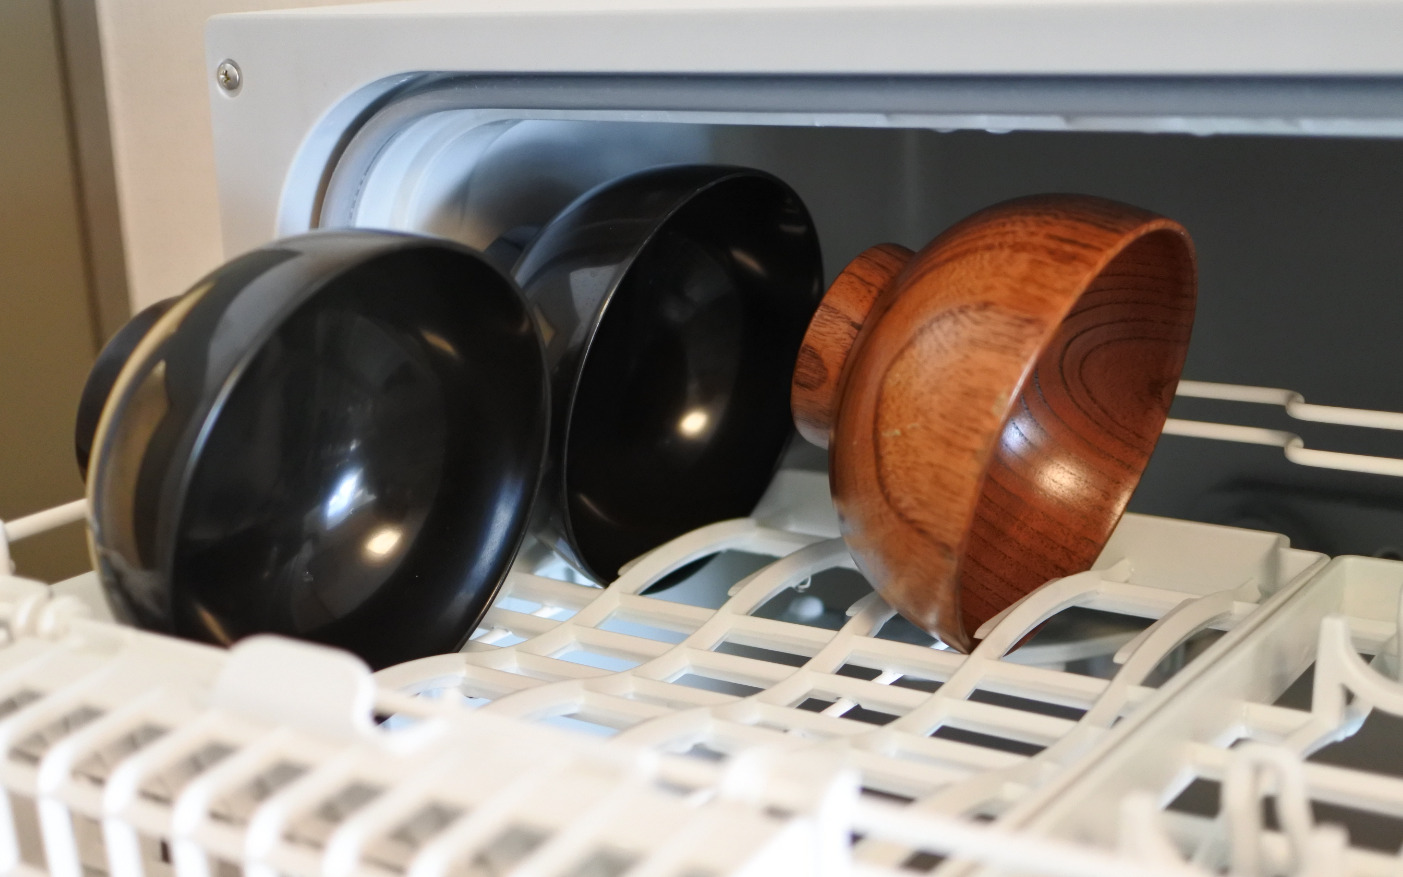 無印良品】汁椀が食洗機で洗えるか1年間検証してみた | タコマ・キシダ・ブログ